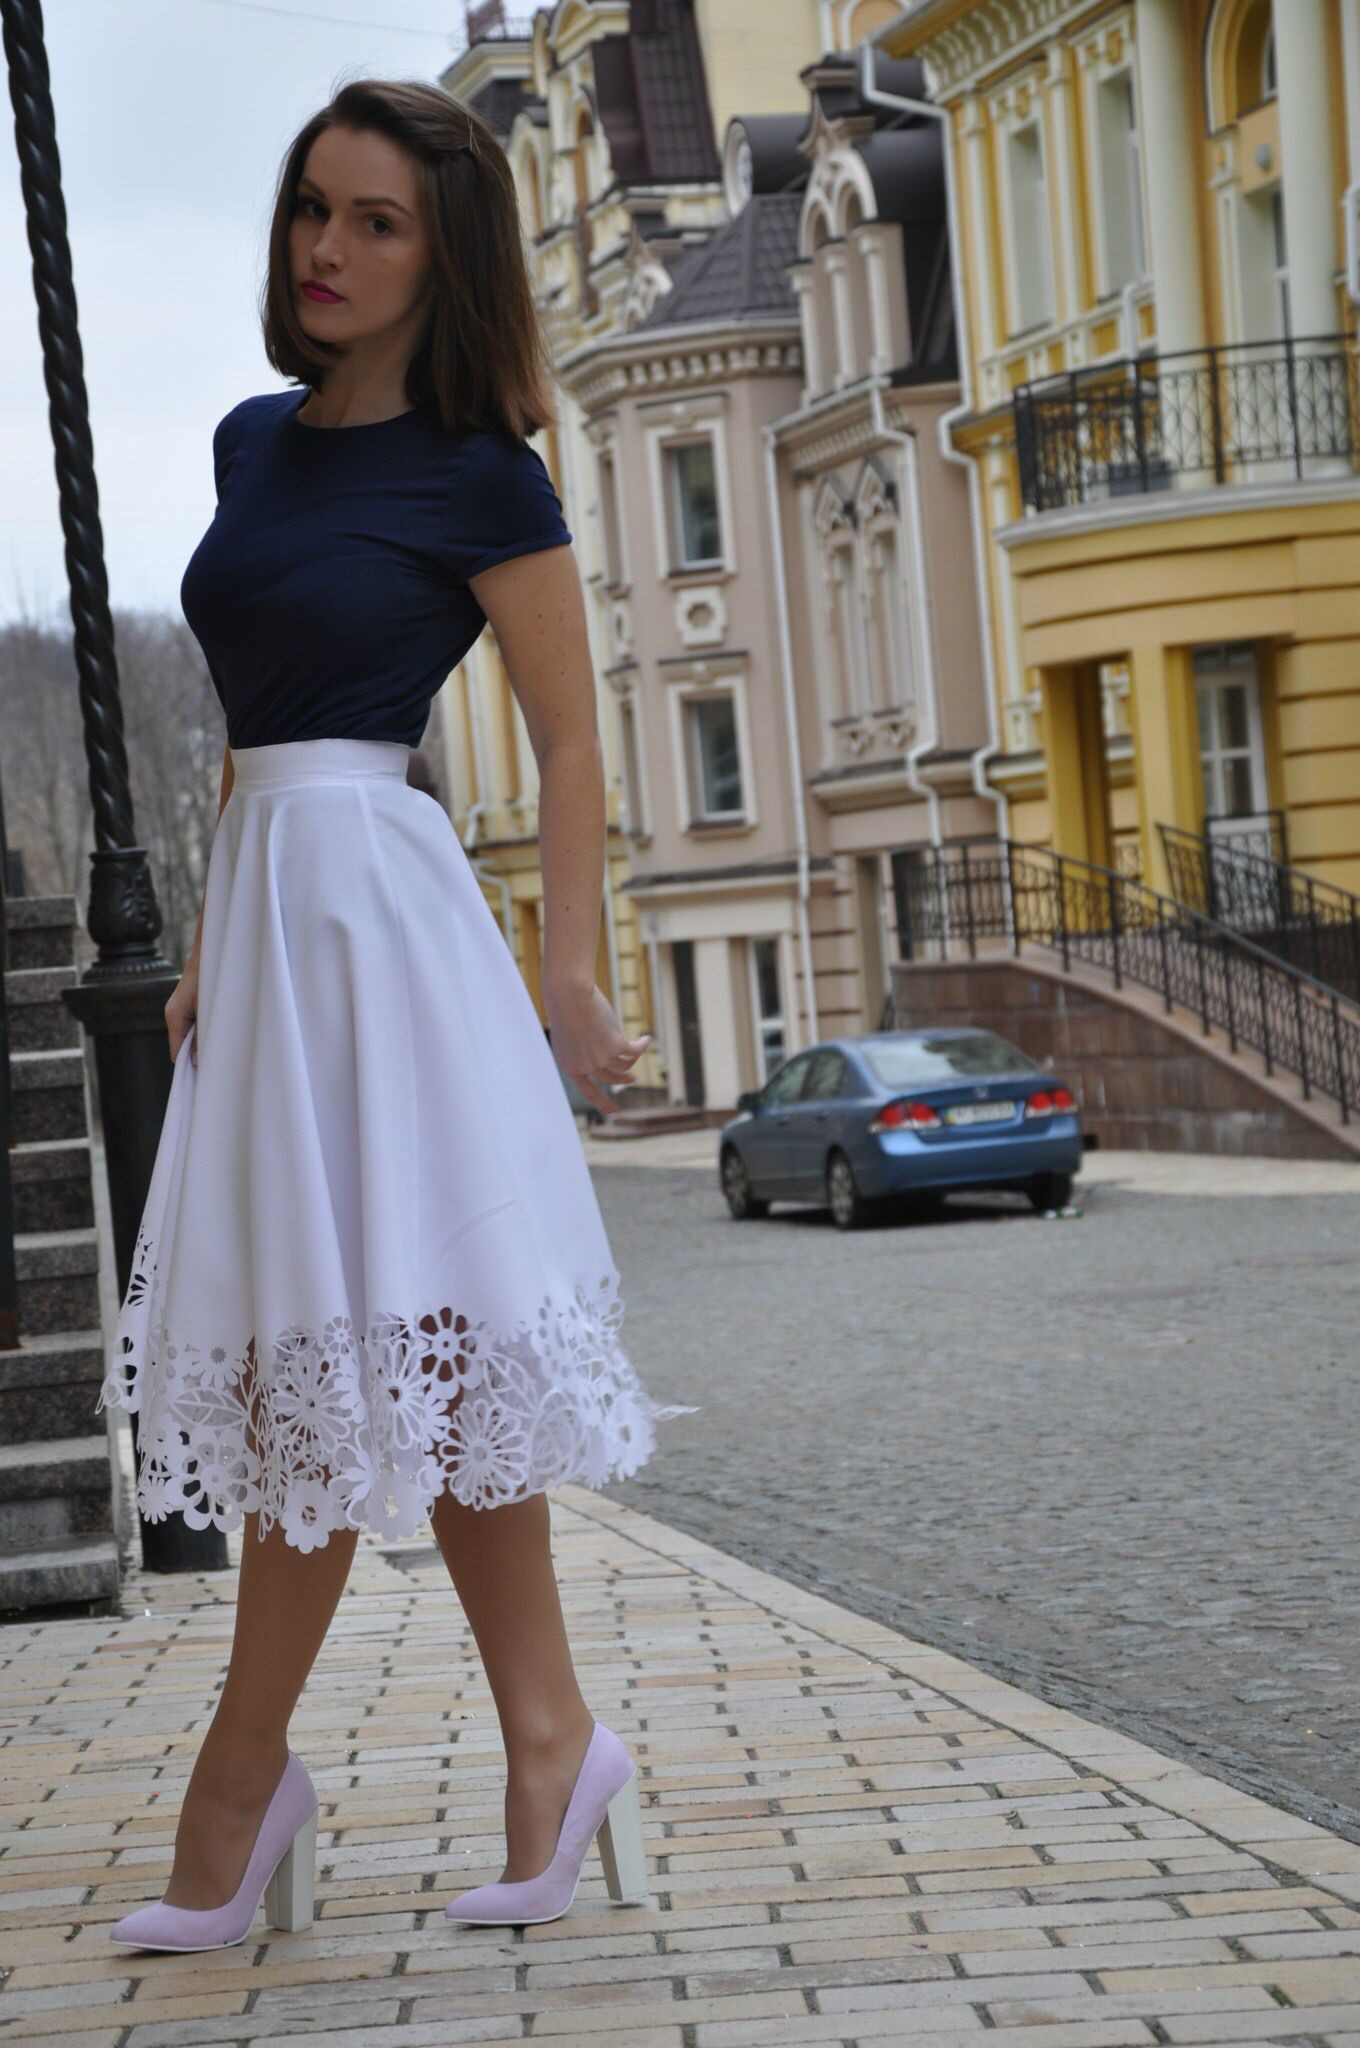 Falda blanca con top negro, Moda modesta: Trajes De Falda,  Semana de la Moda,  Atuendos Informales  